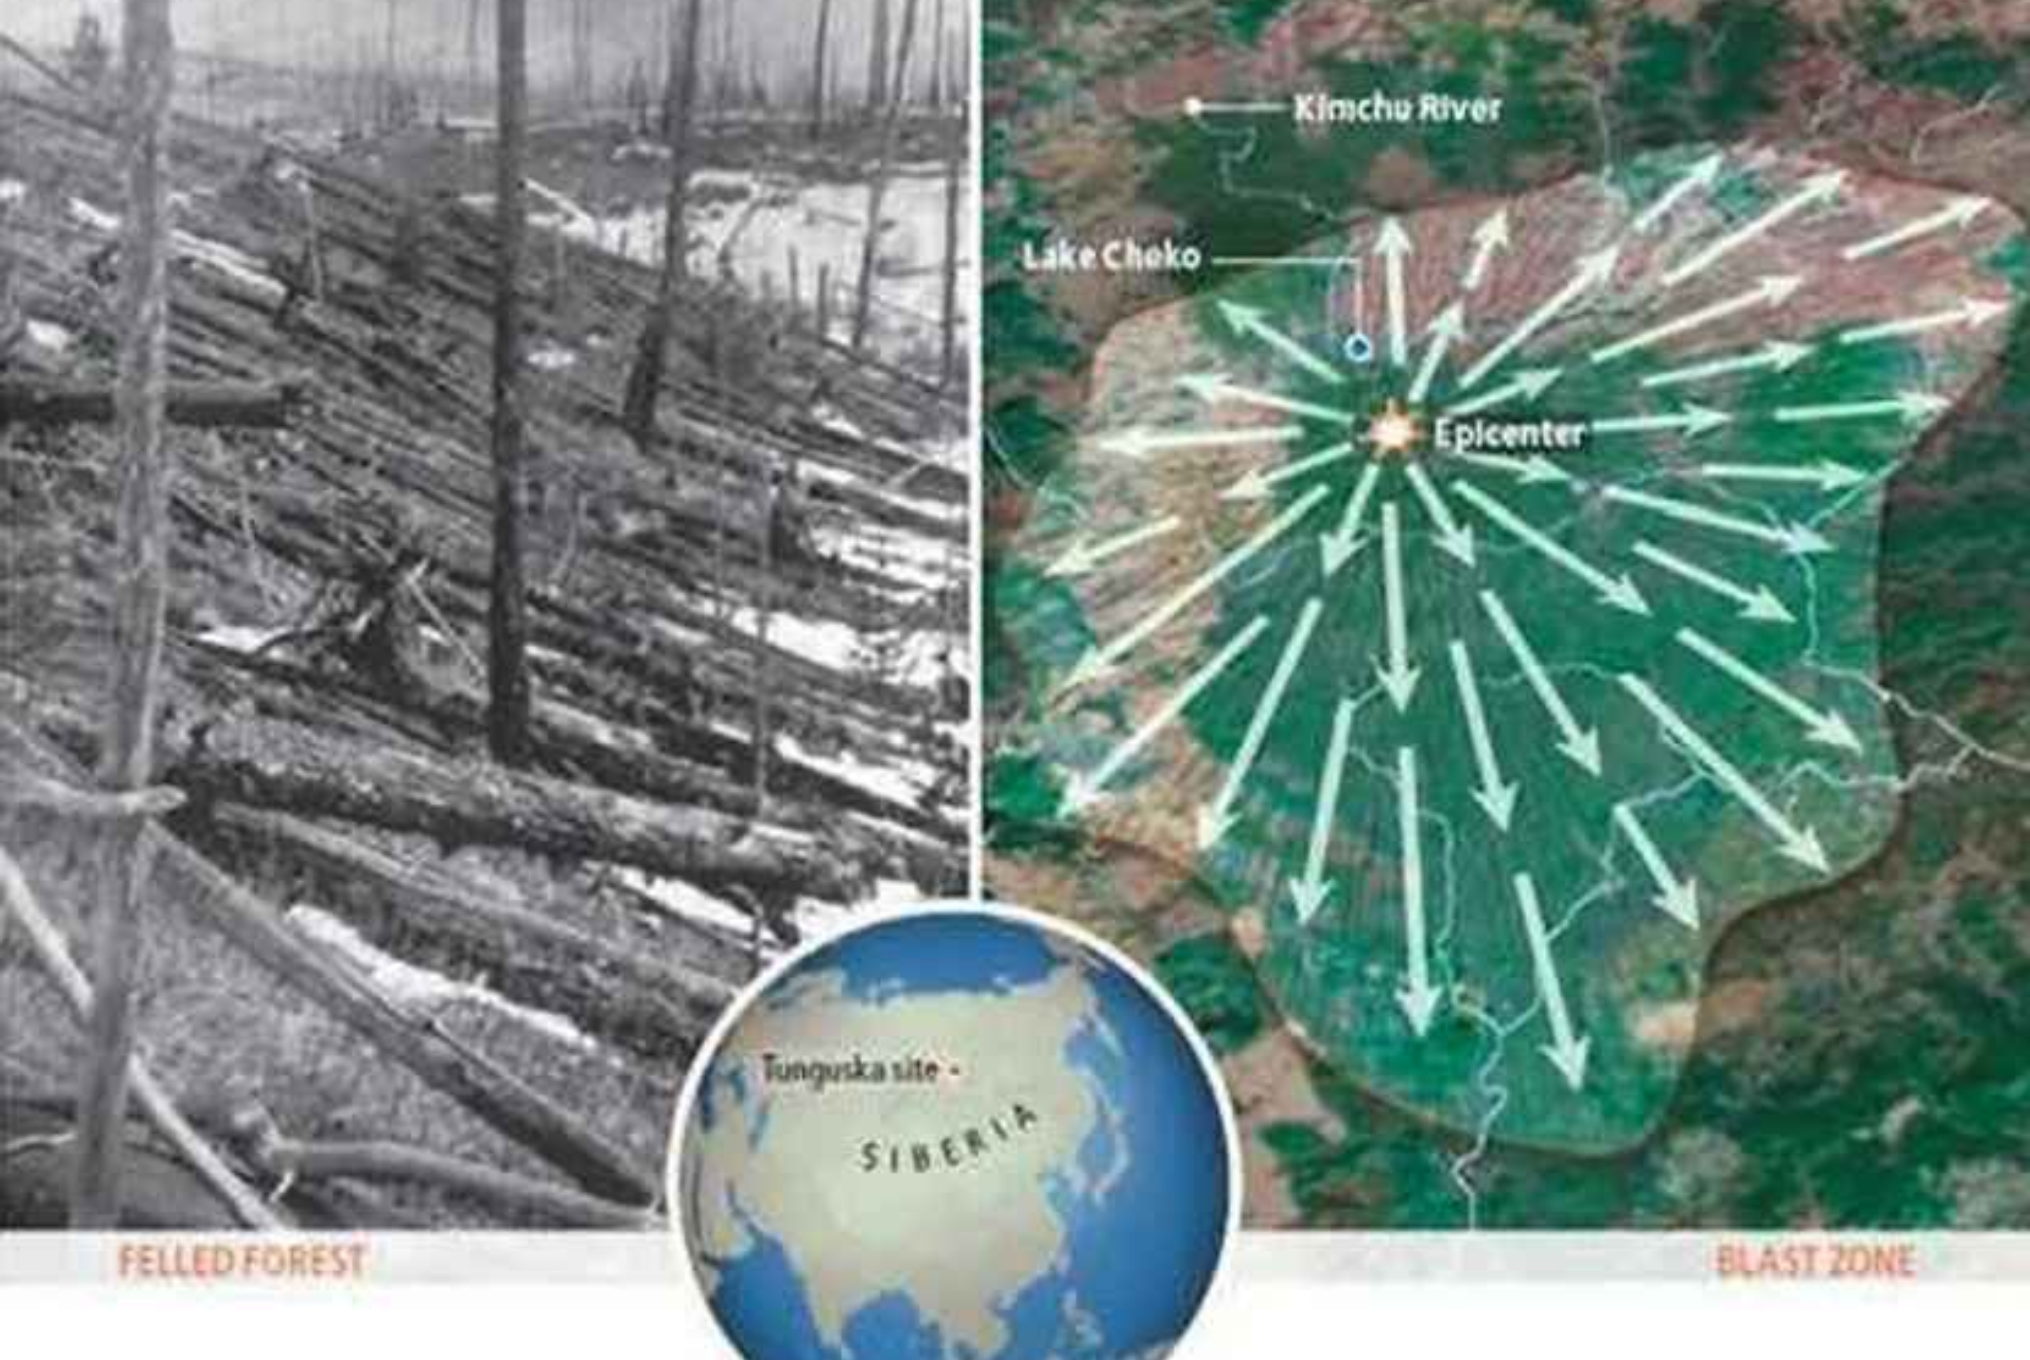 Τουνγκούσκα: Η μυστηριώδης έκρηξη που ισοπέδωσε χιλιόμετρα δάσους σε λίγα δευτερόλεπτα και οι θεωρίες συνωμοσίας για εξωγήινους